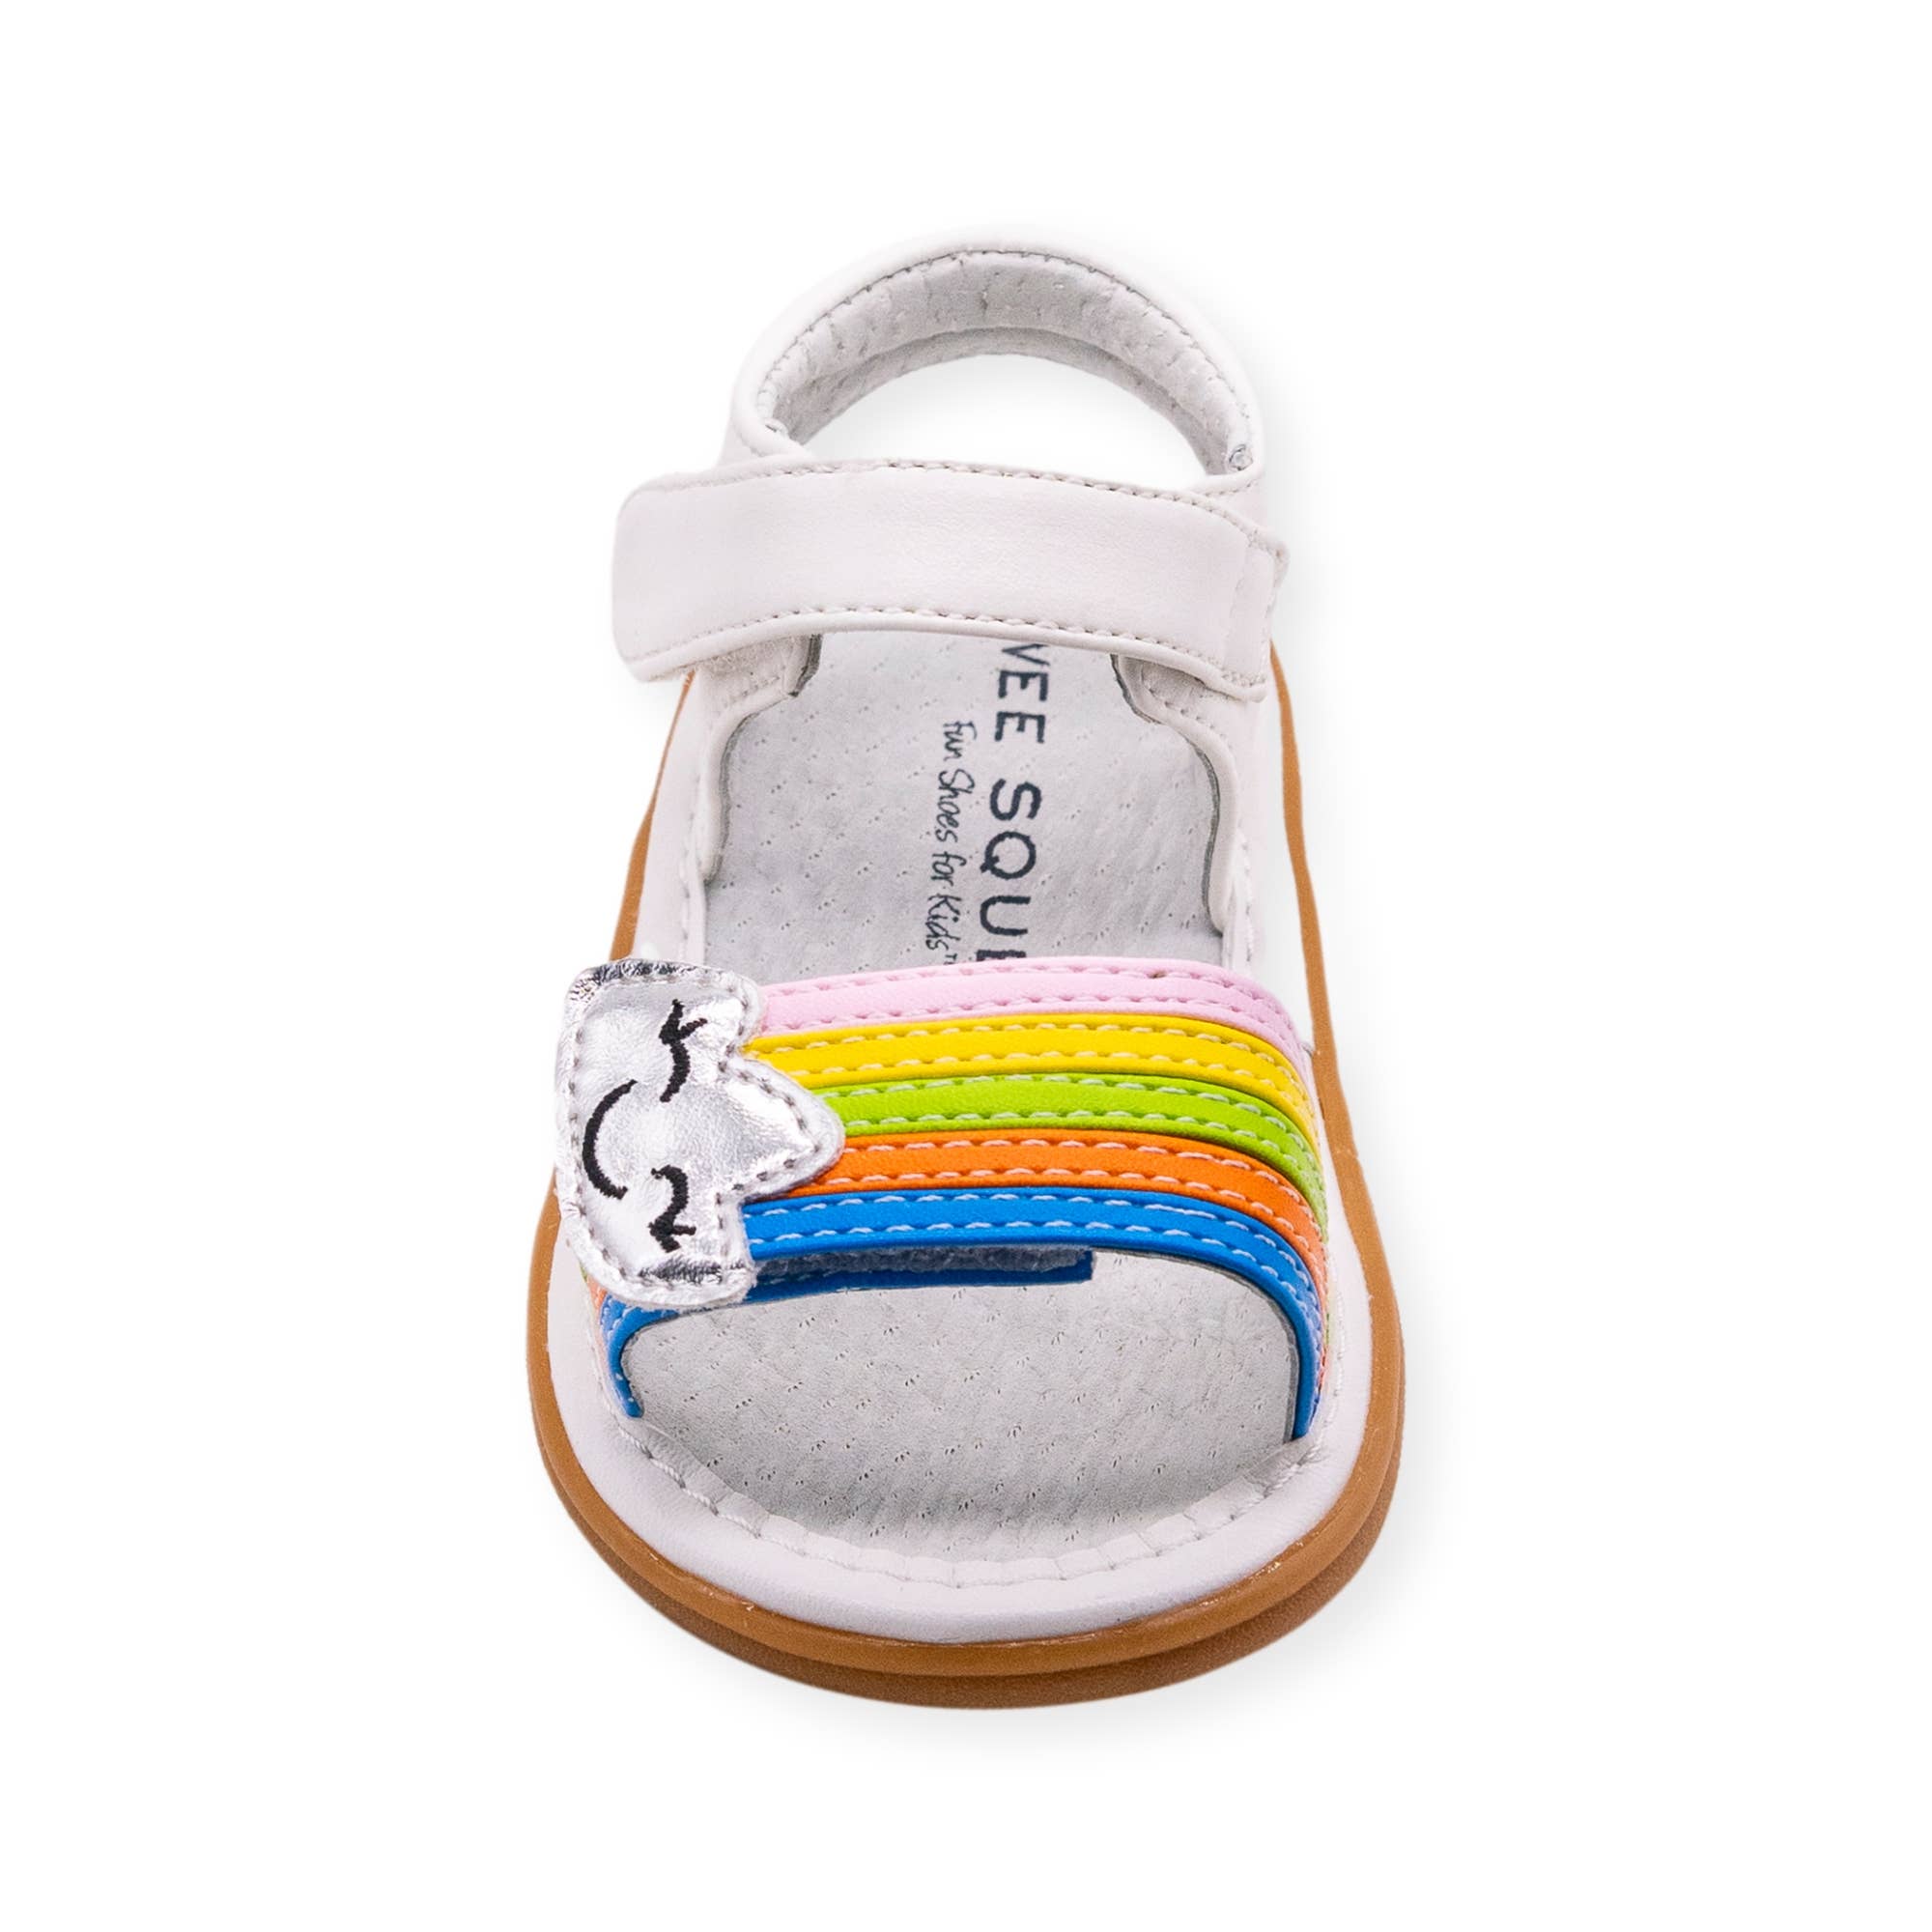 Wee Squeak Rainbow Sandal Shoes